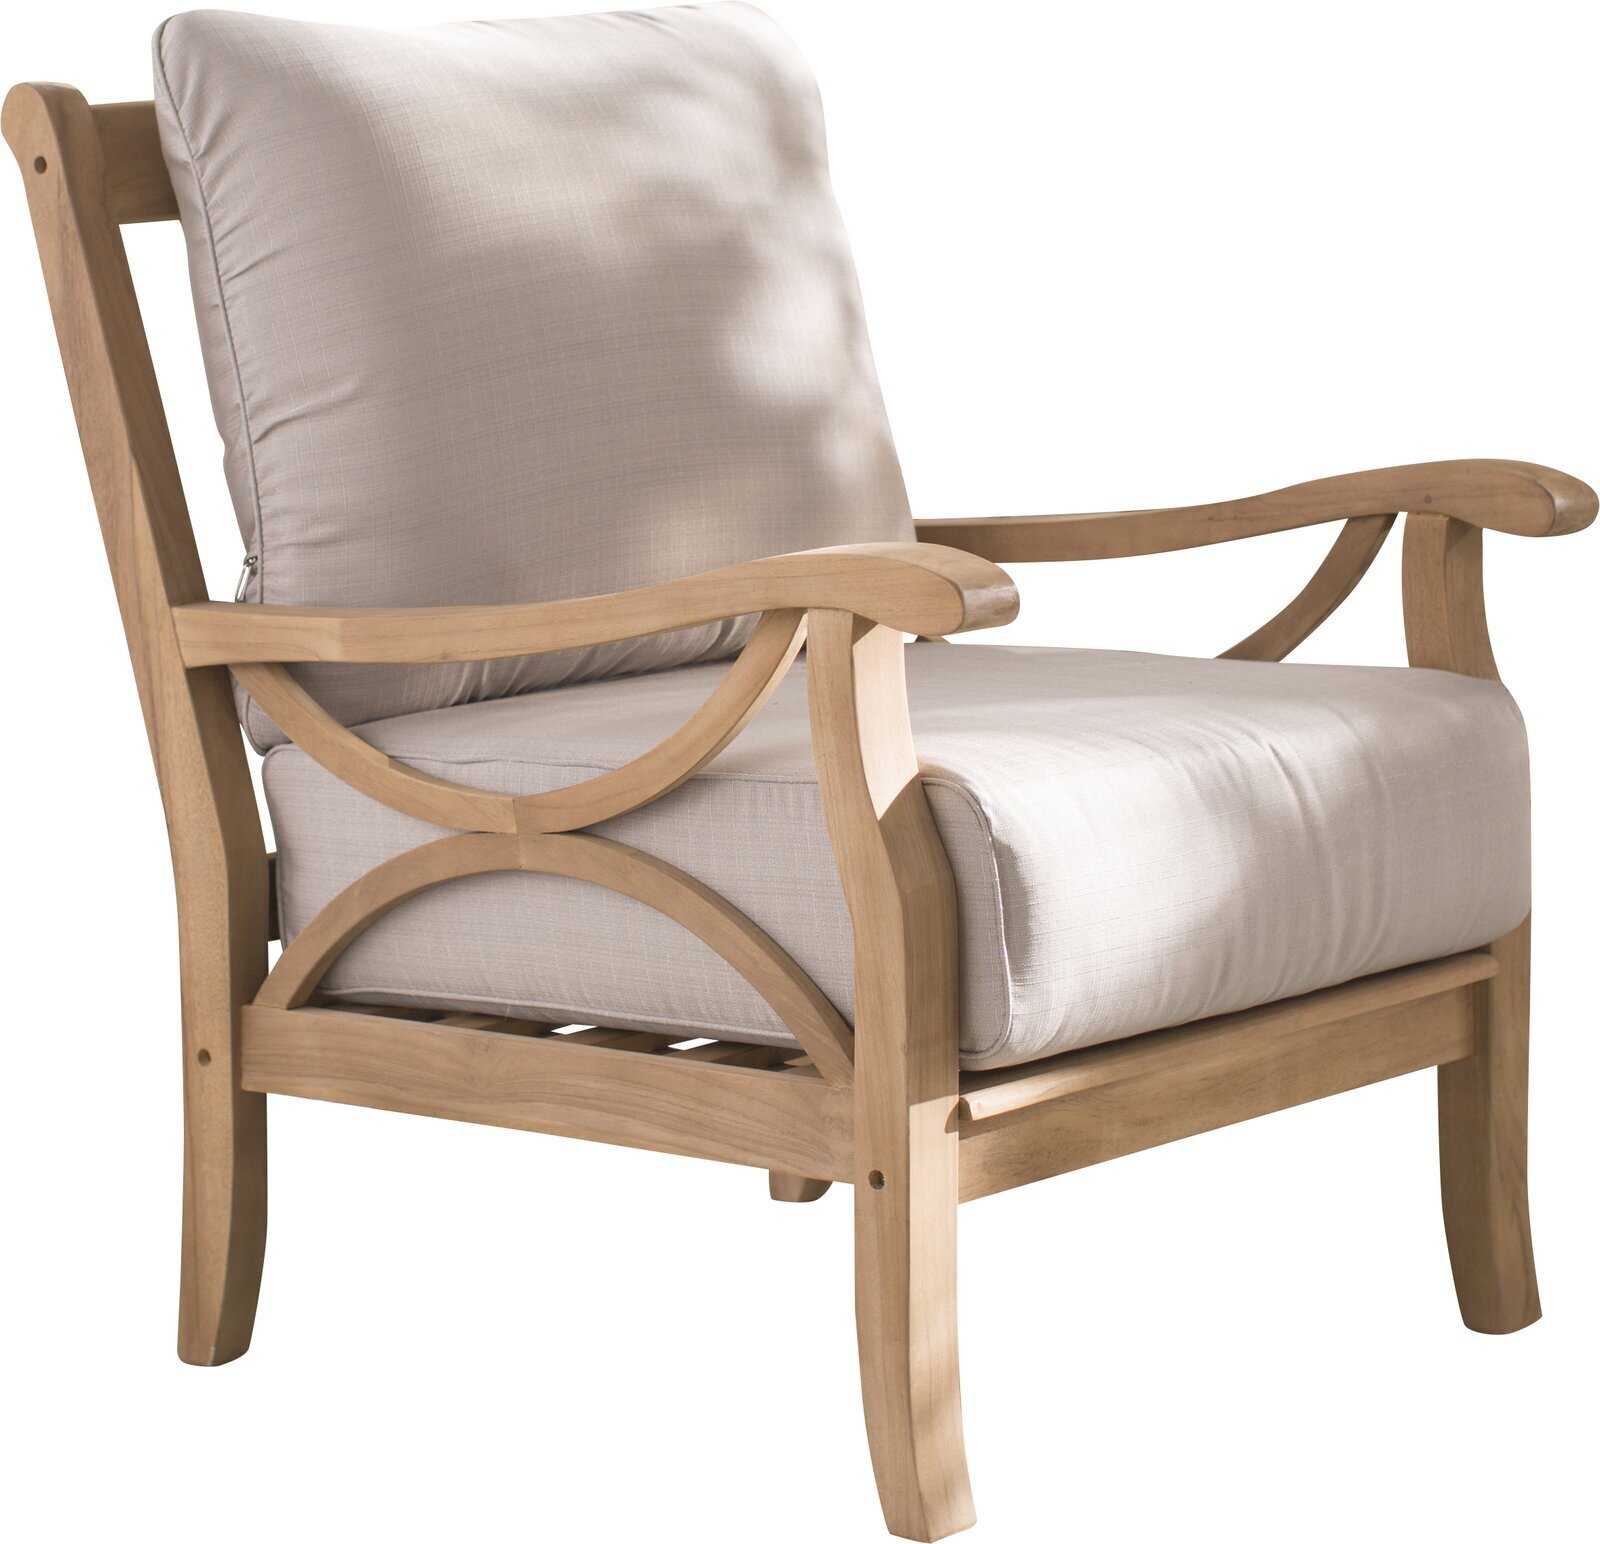 Comfortable and Elegant Teak Wood Bedroom Chair